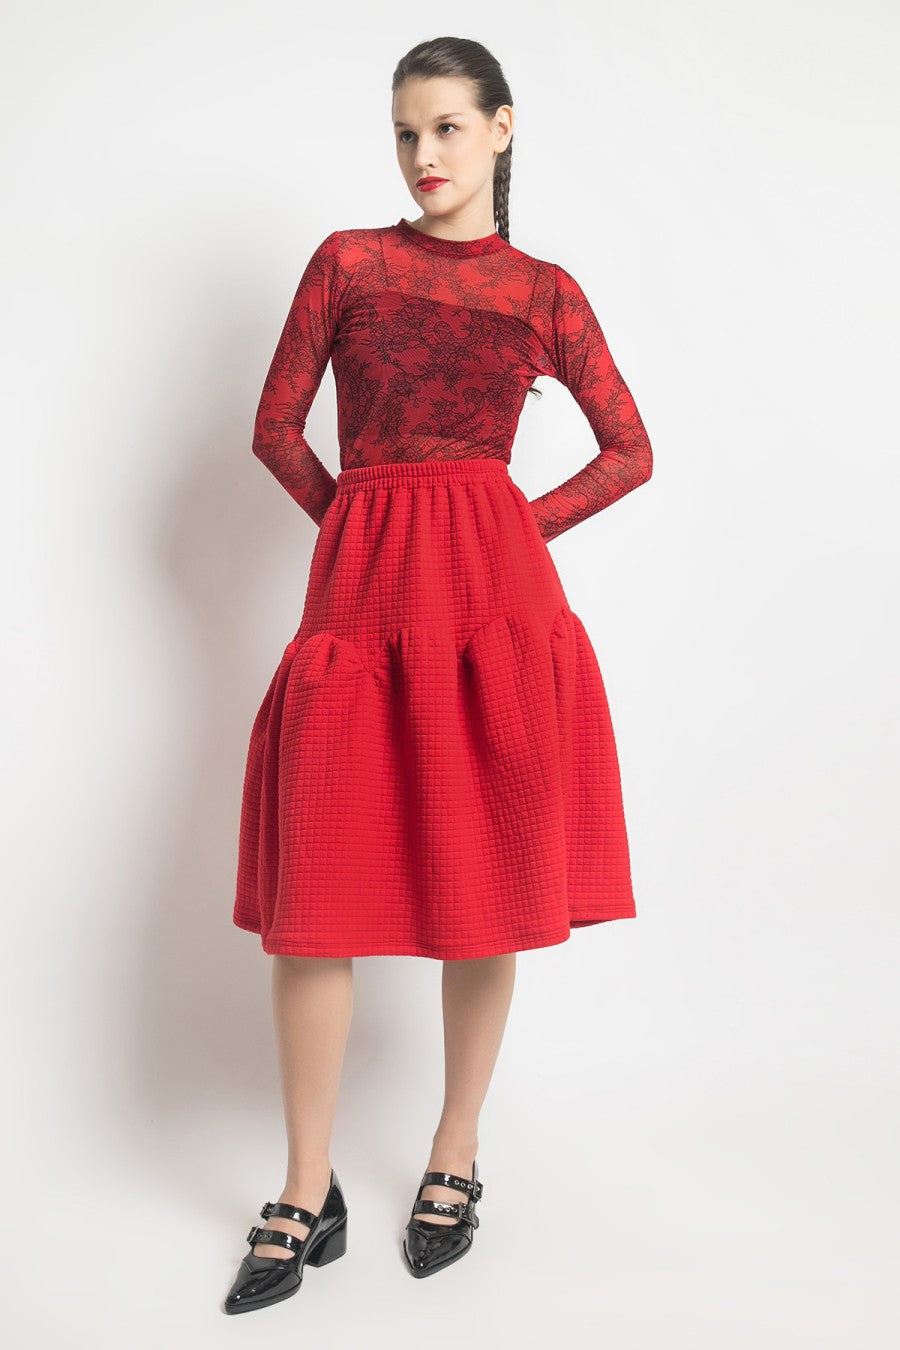 ​Quilted Skirt Red - Alexalexa